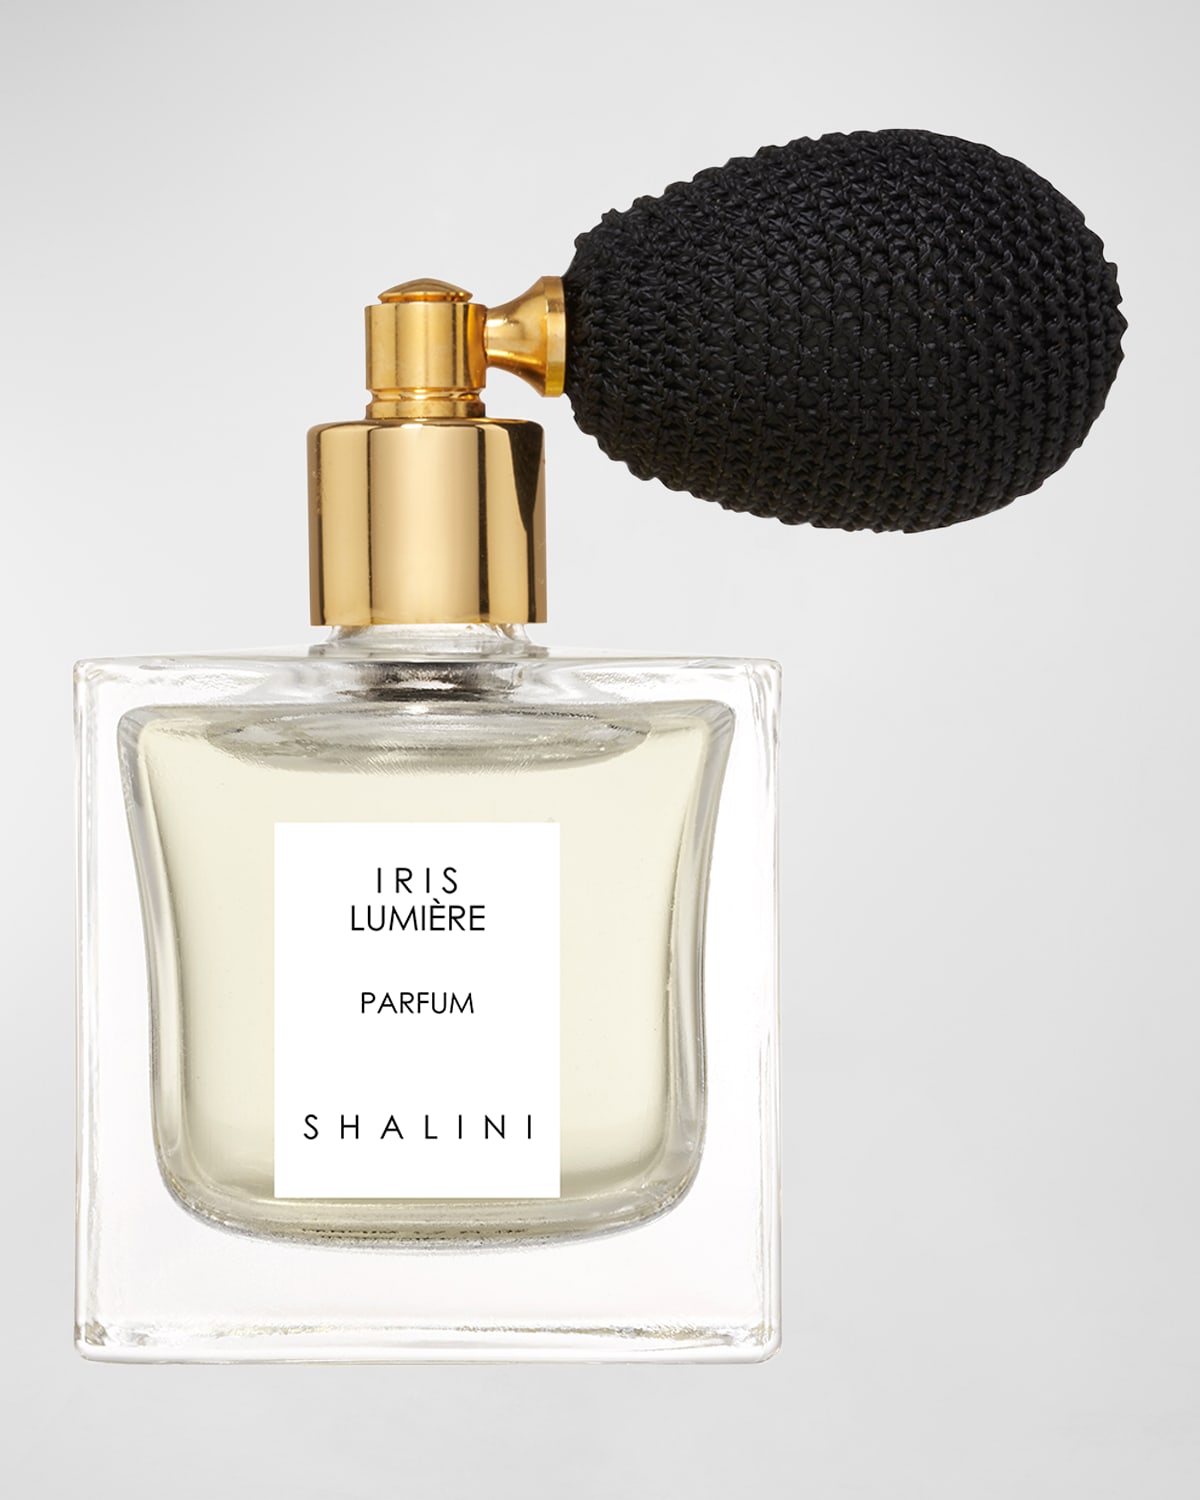 Iris Lumiere Parfum in Cubique Glass Bottle w/ Black Bulb Atomizer, 1.7 oz.